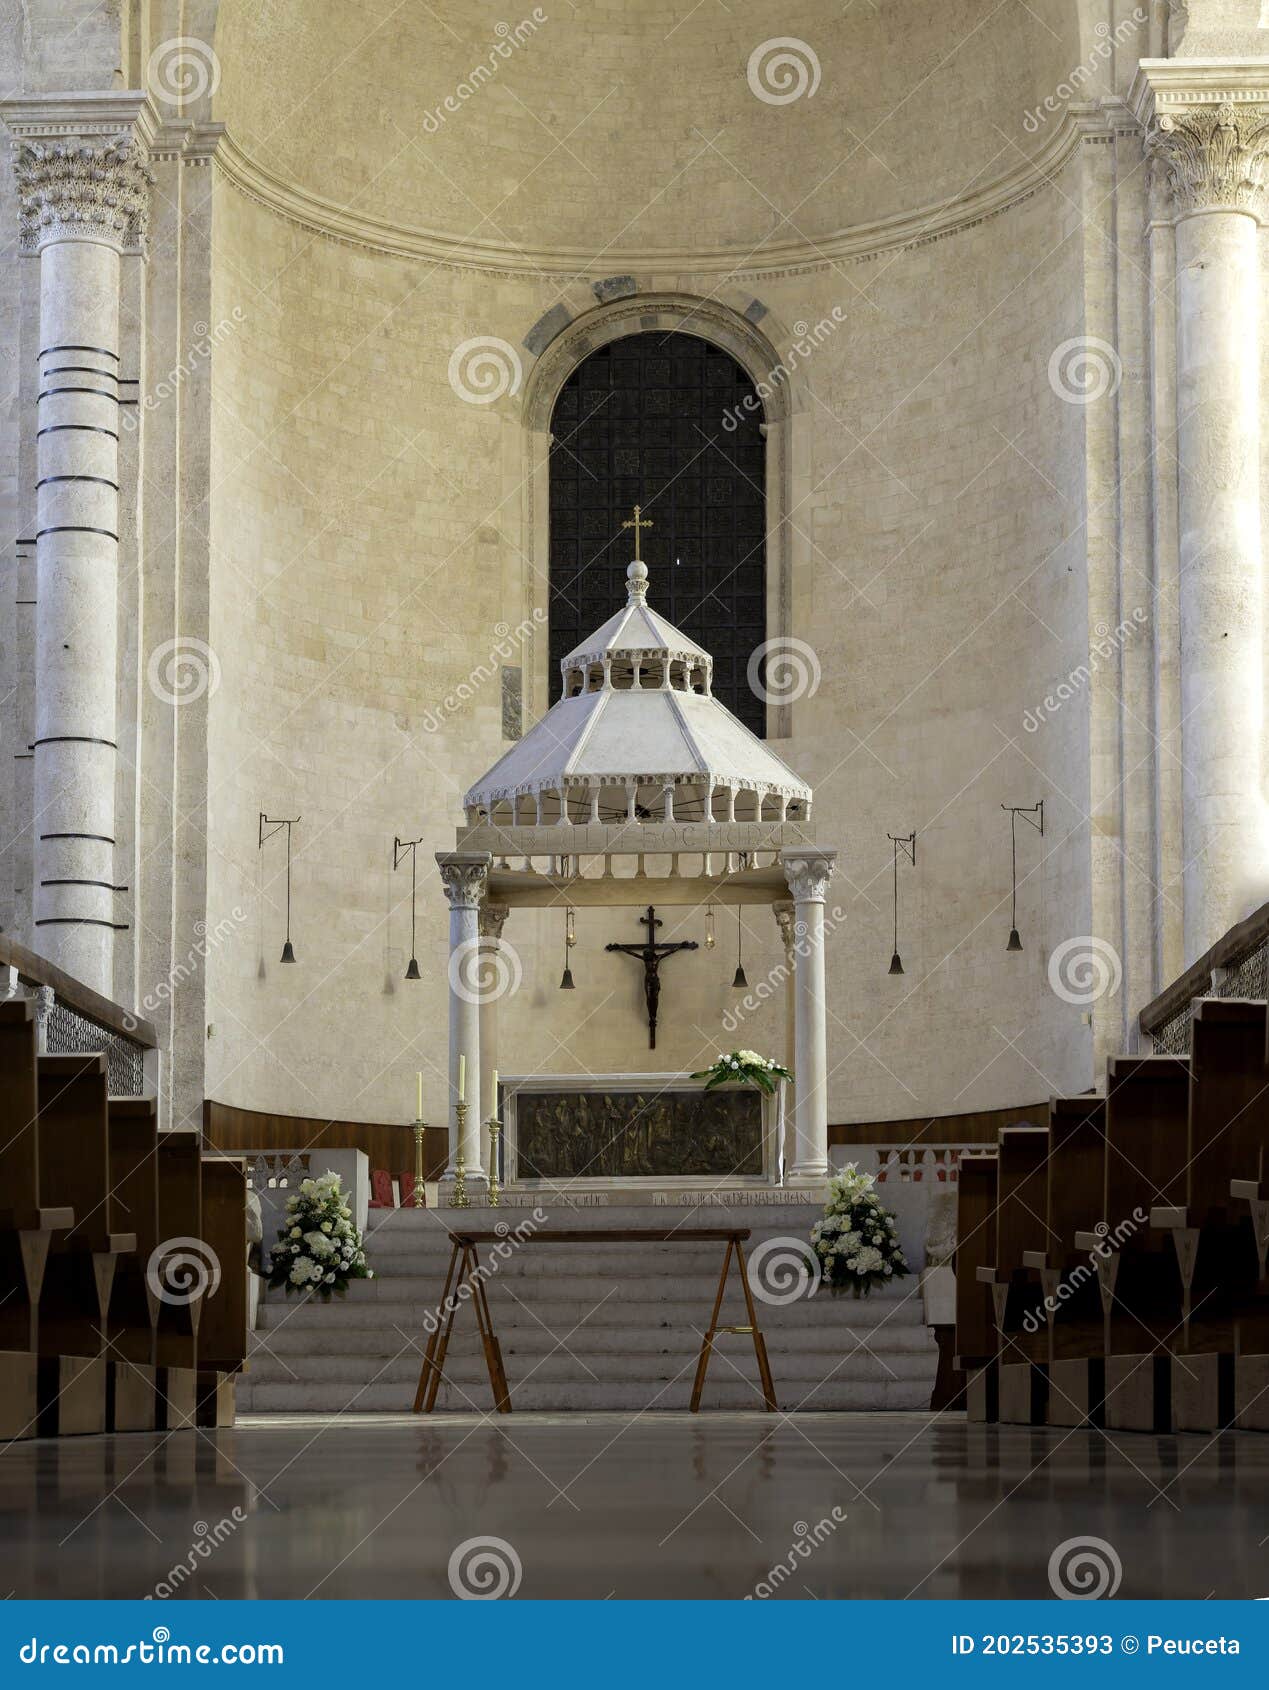 internal naves of the st sabino cathedral. bari